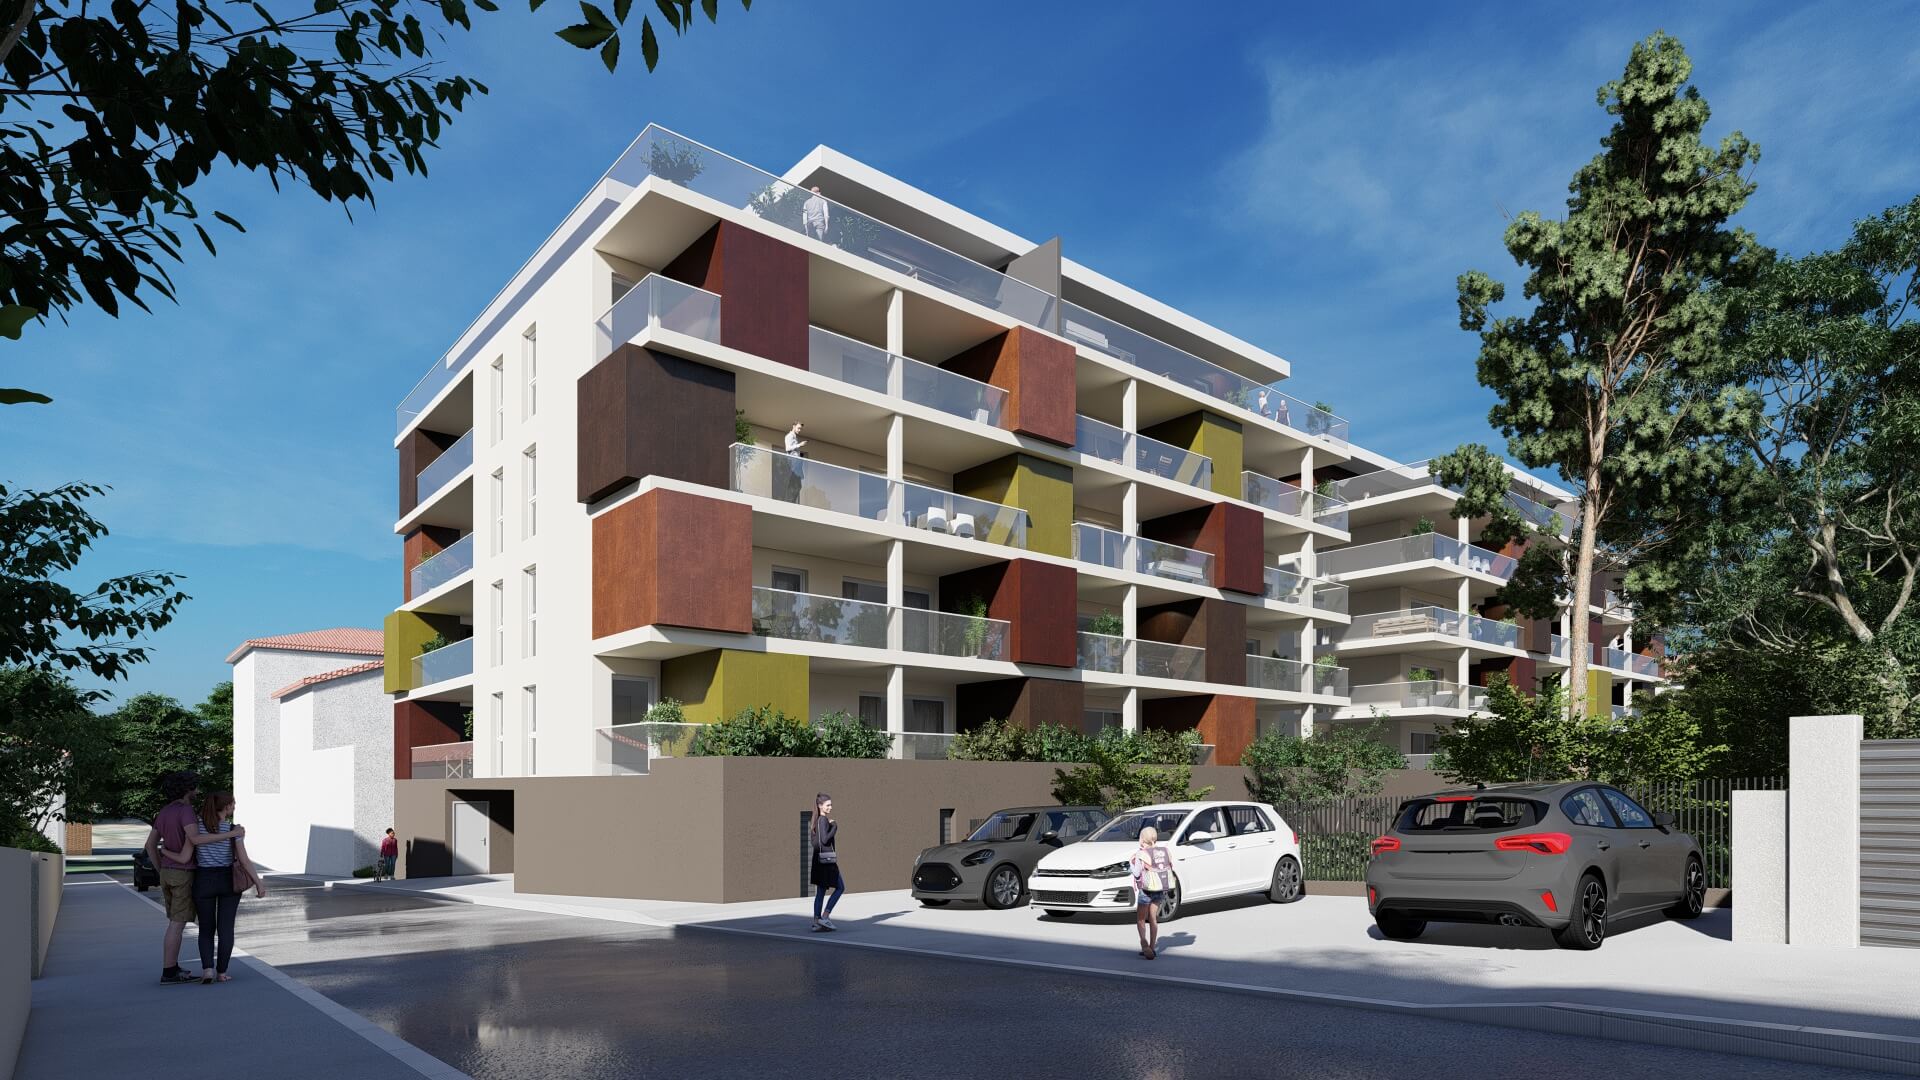 Programme immobilier Pop Life à Saint-Chamond - Vue de la façade